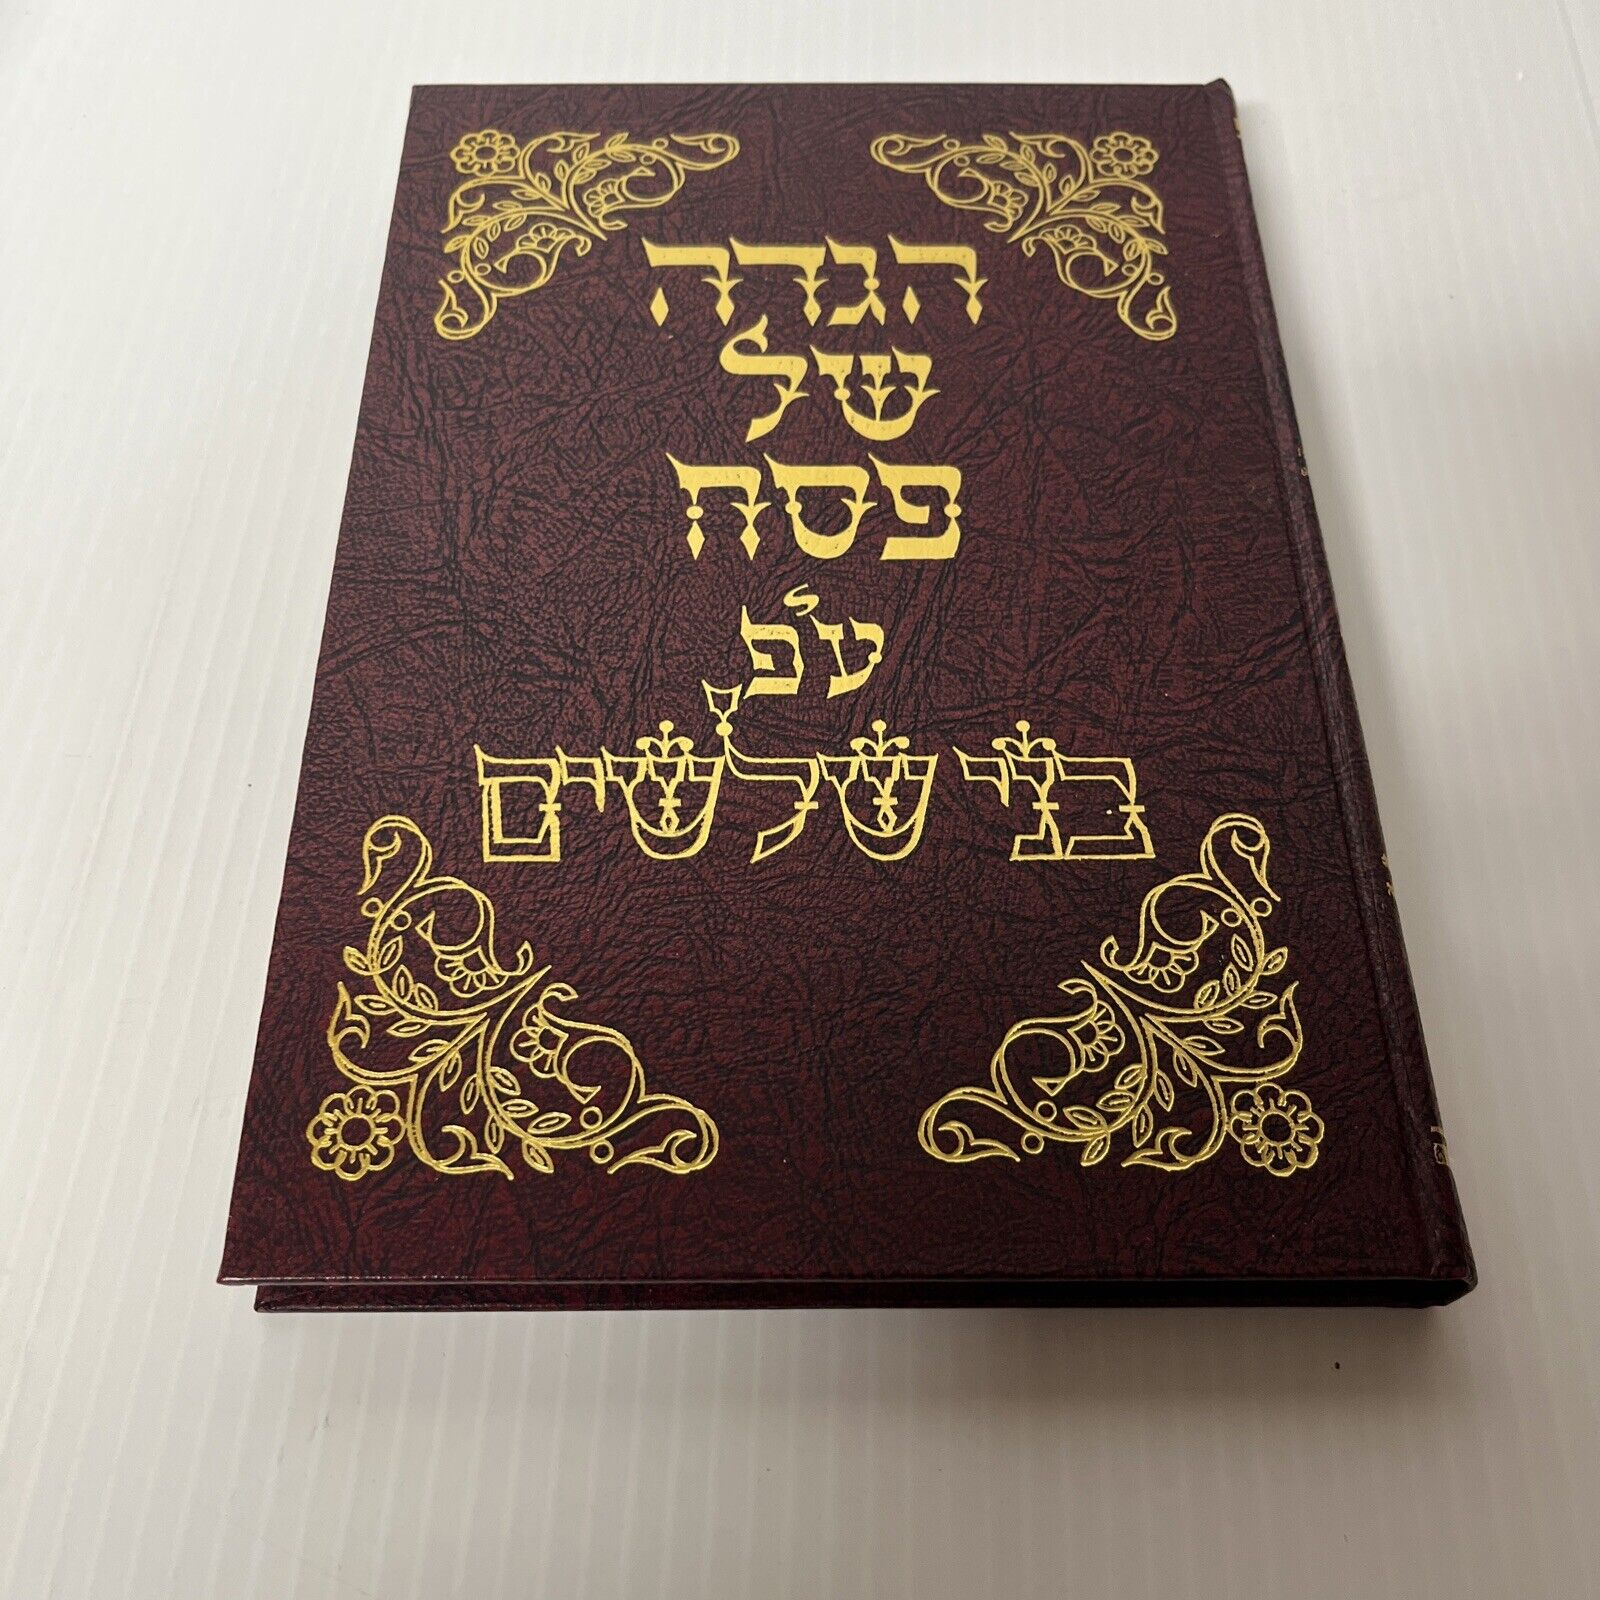 1978 Koson (Hasidic dynasty) Haggada Bnei Shileishim Chasidic Rottenberg